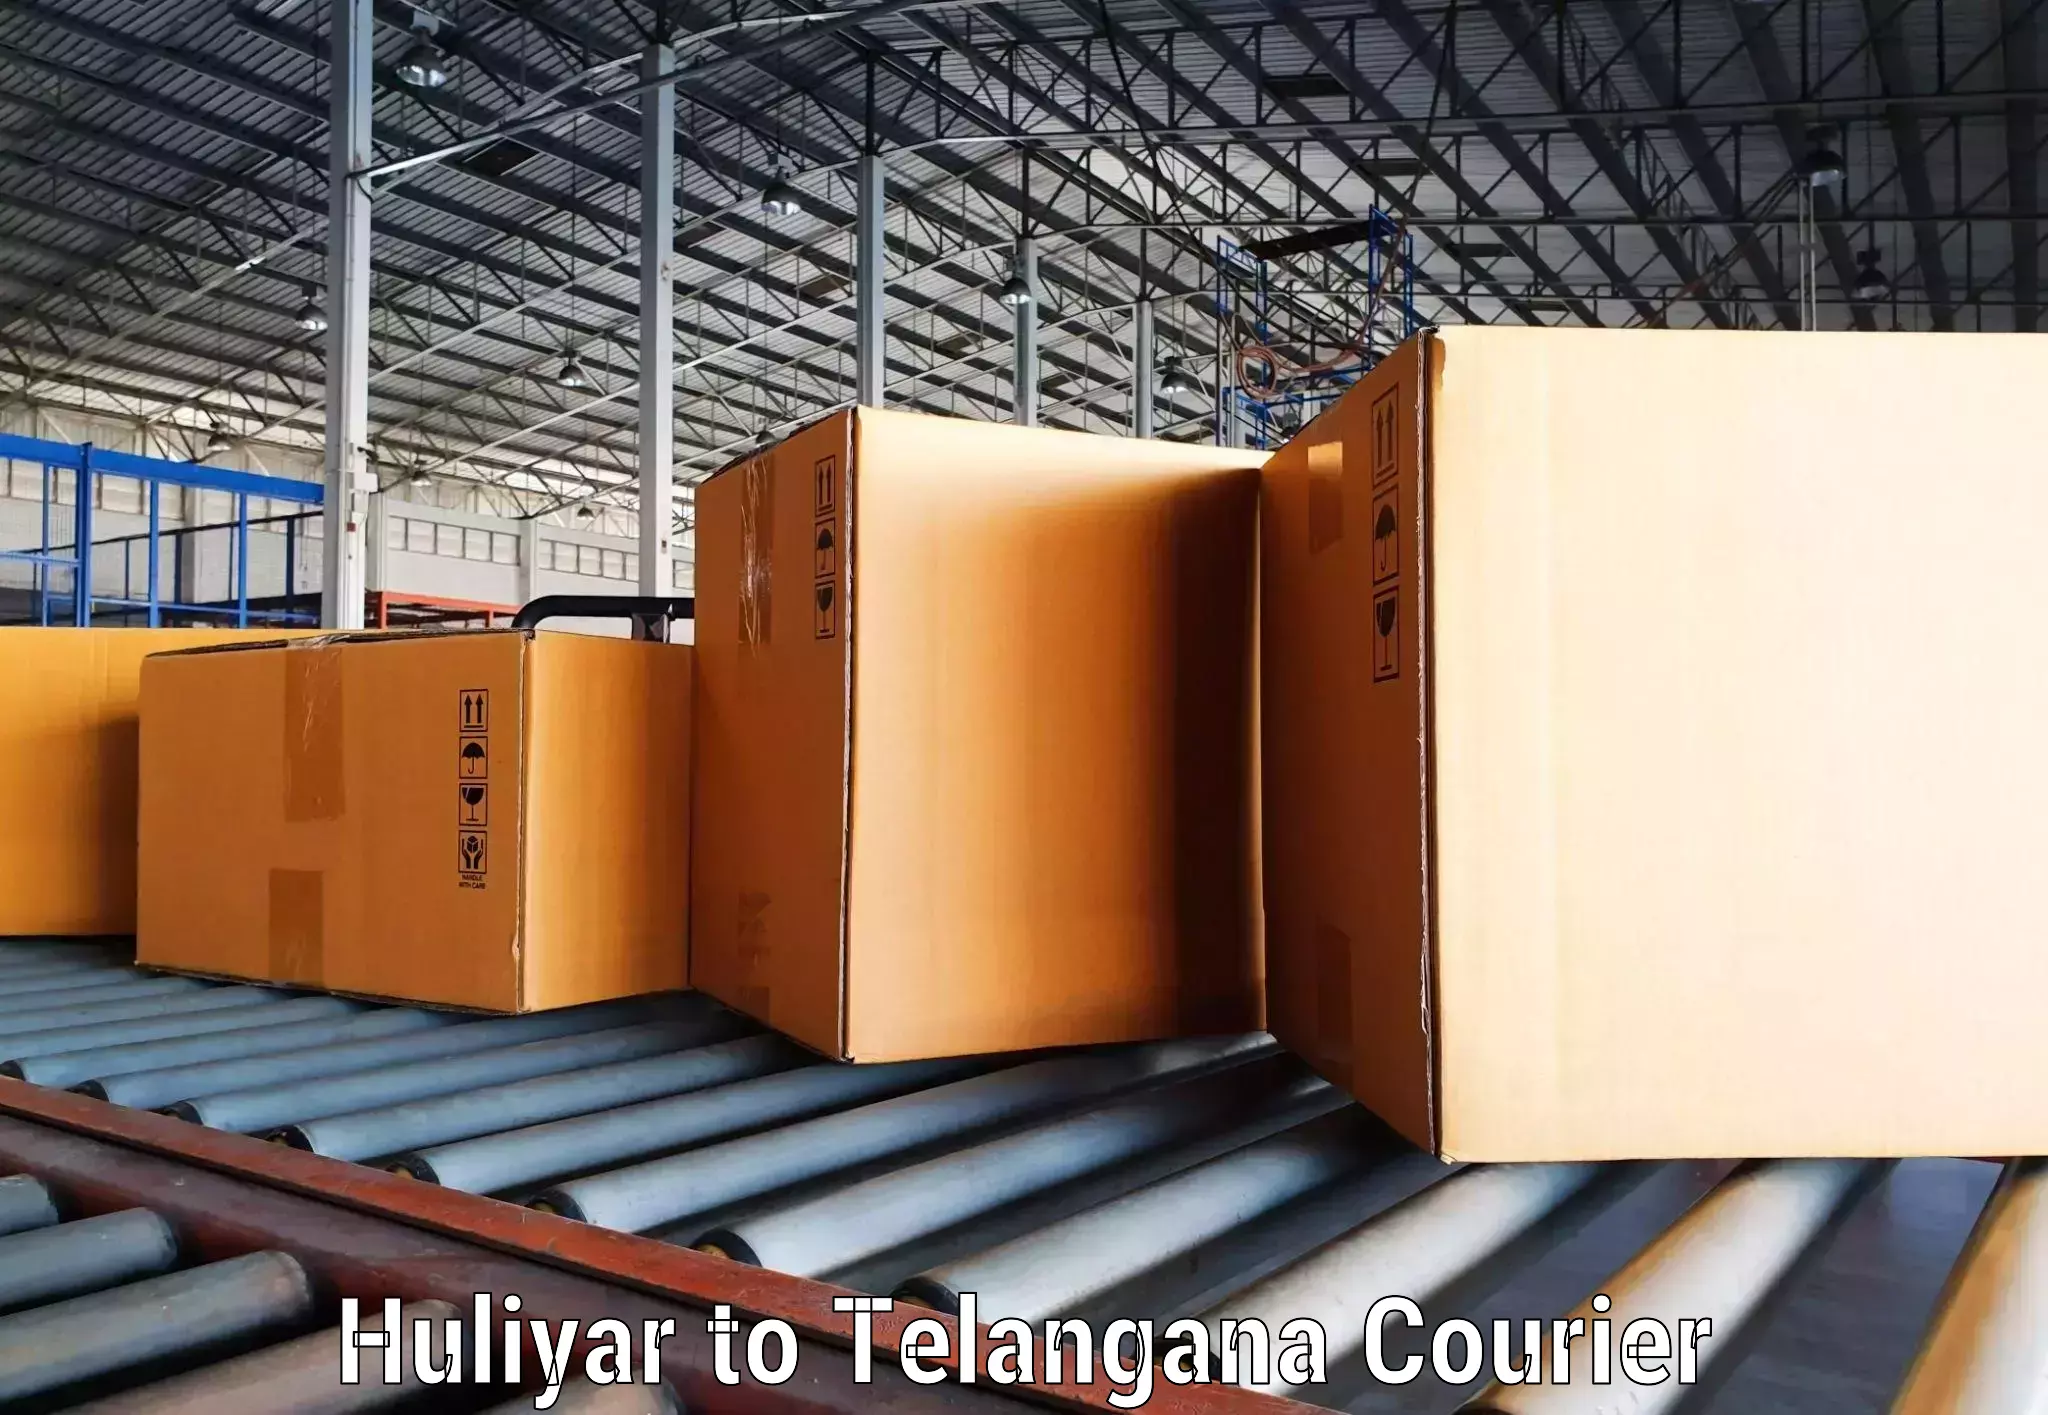 High-capacity courier solutions in Huliyar to Balanagar